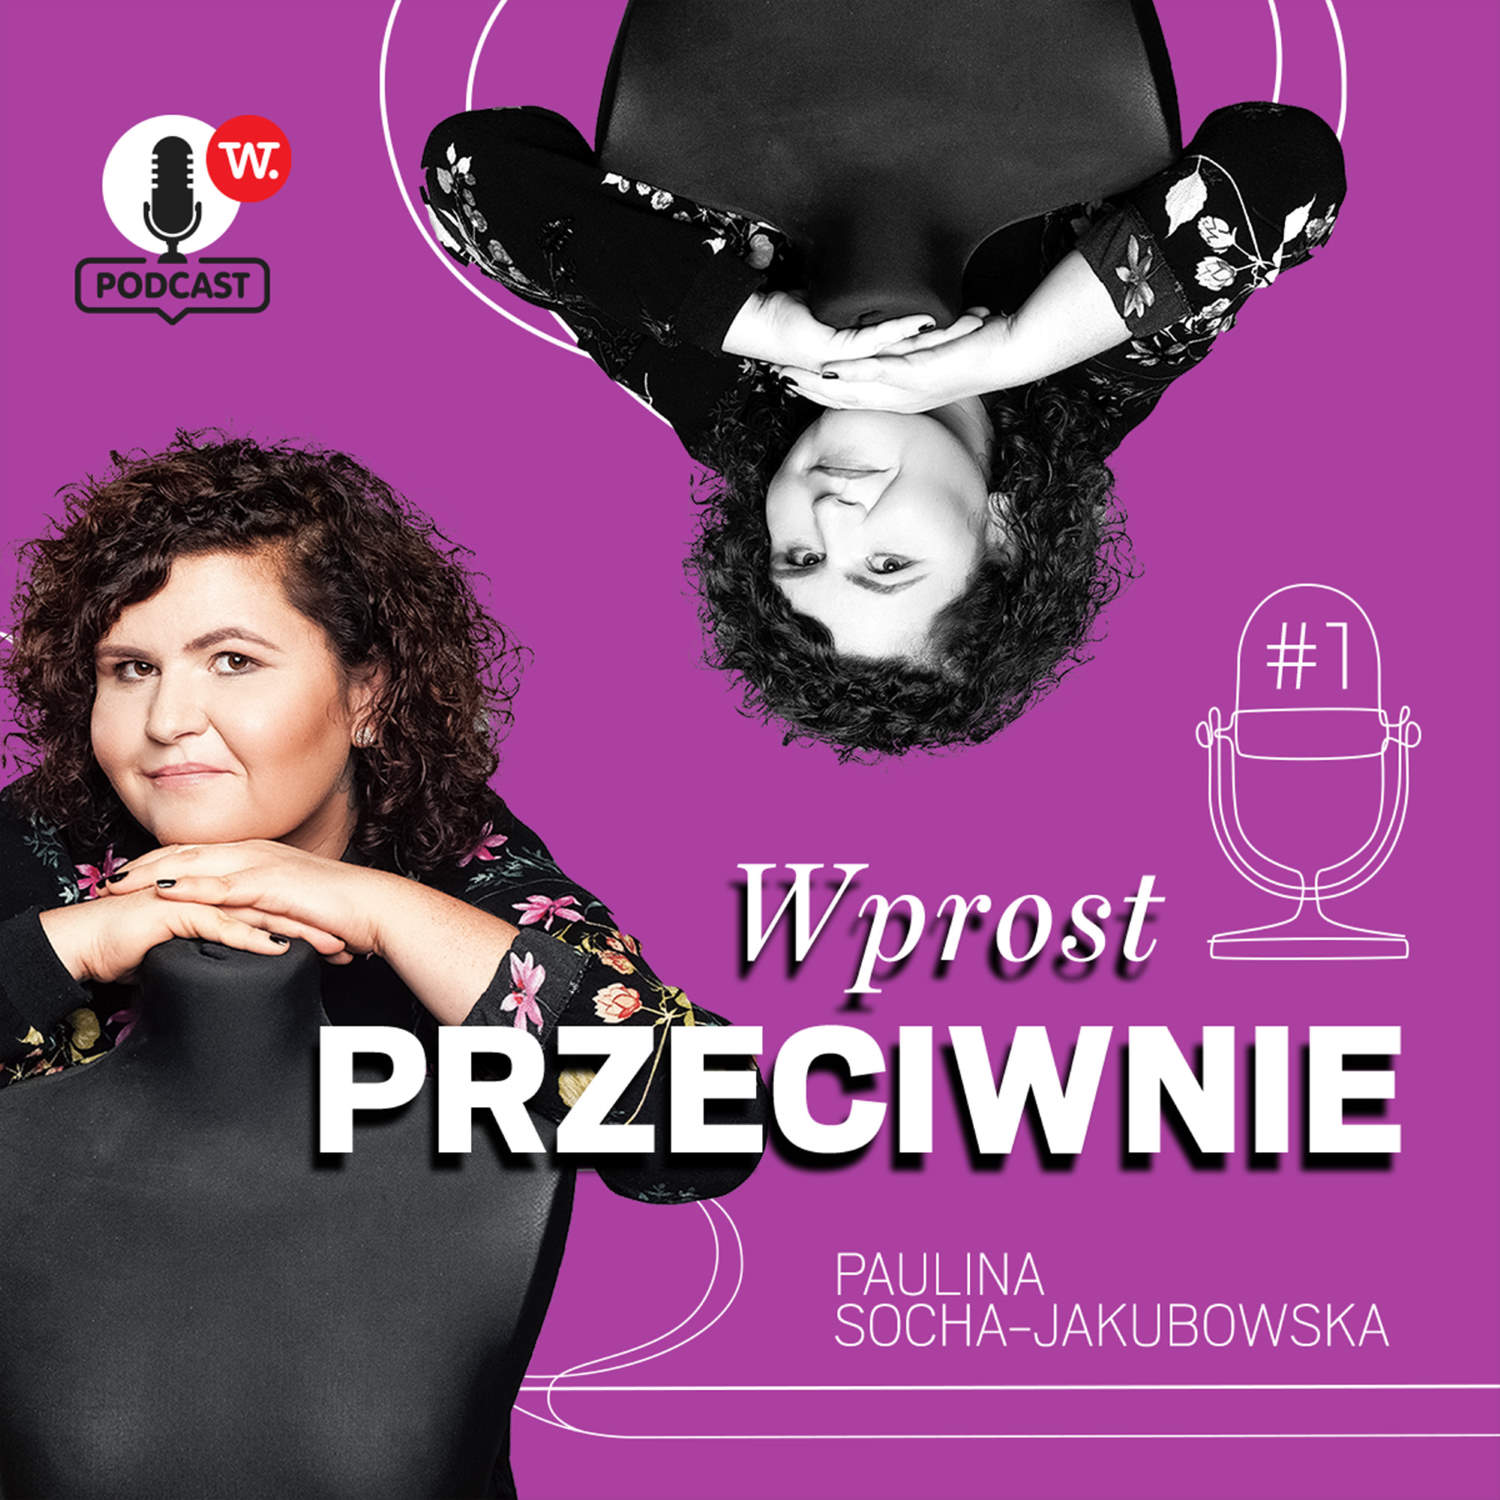 Anna Cieślak: Nie można być autorytetem, jeśli dzisiaj mówisz o raku szyjki macicy, a jutro, że krem jest wspaniały